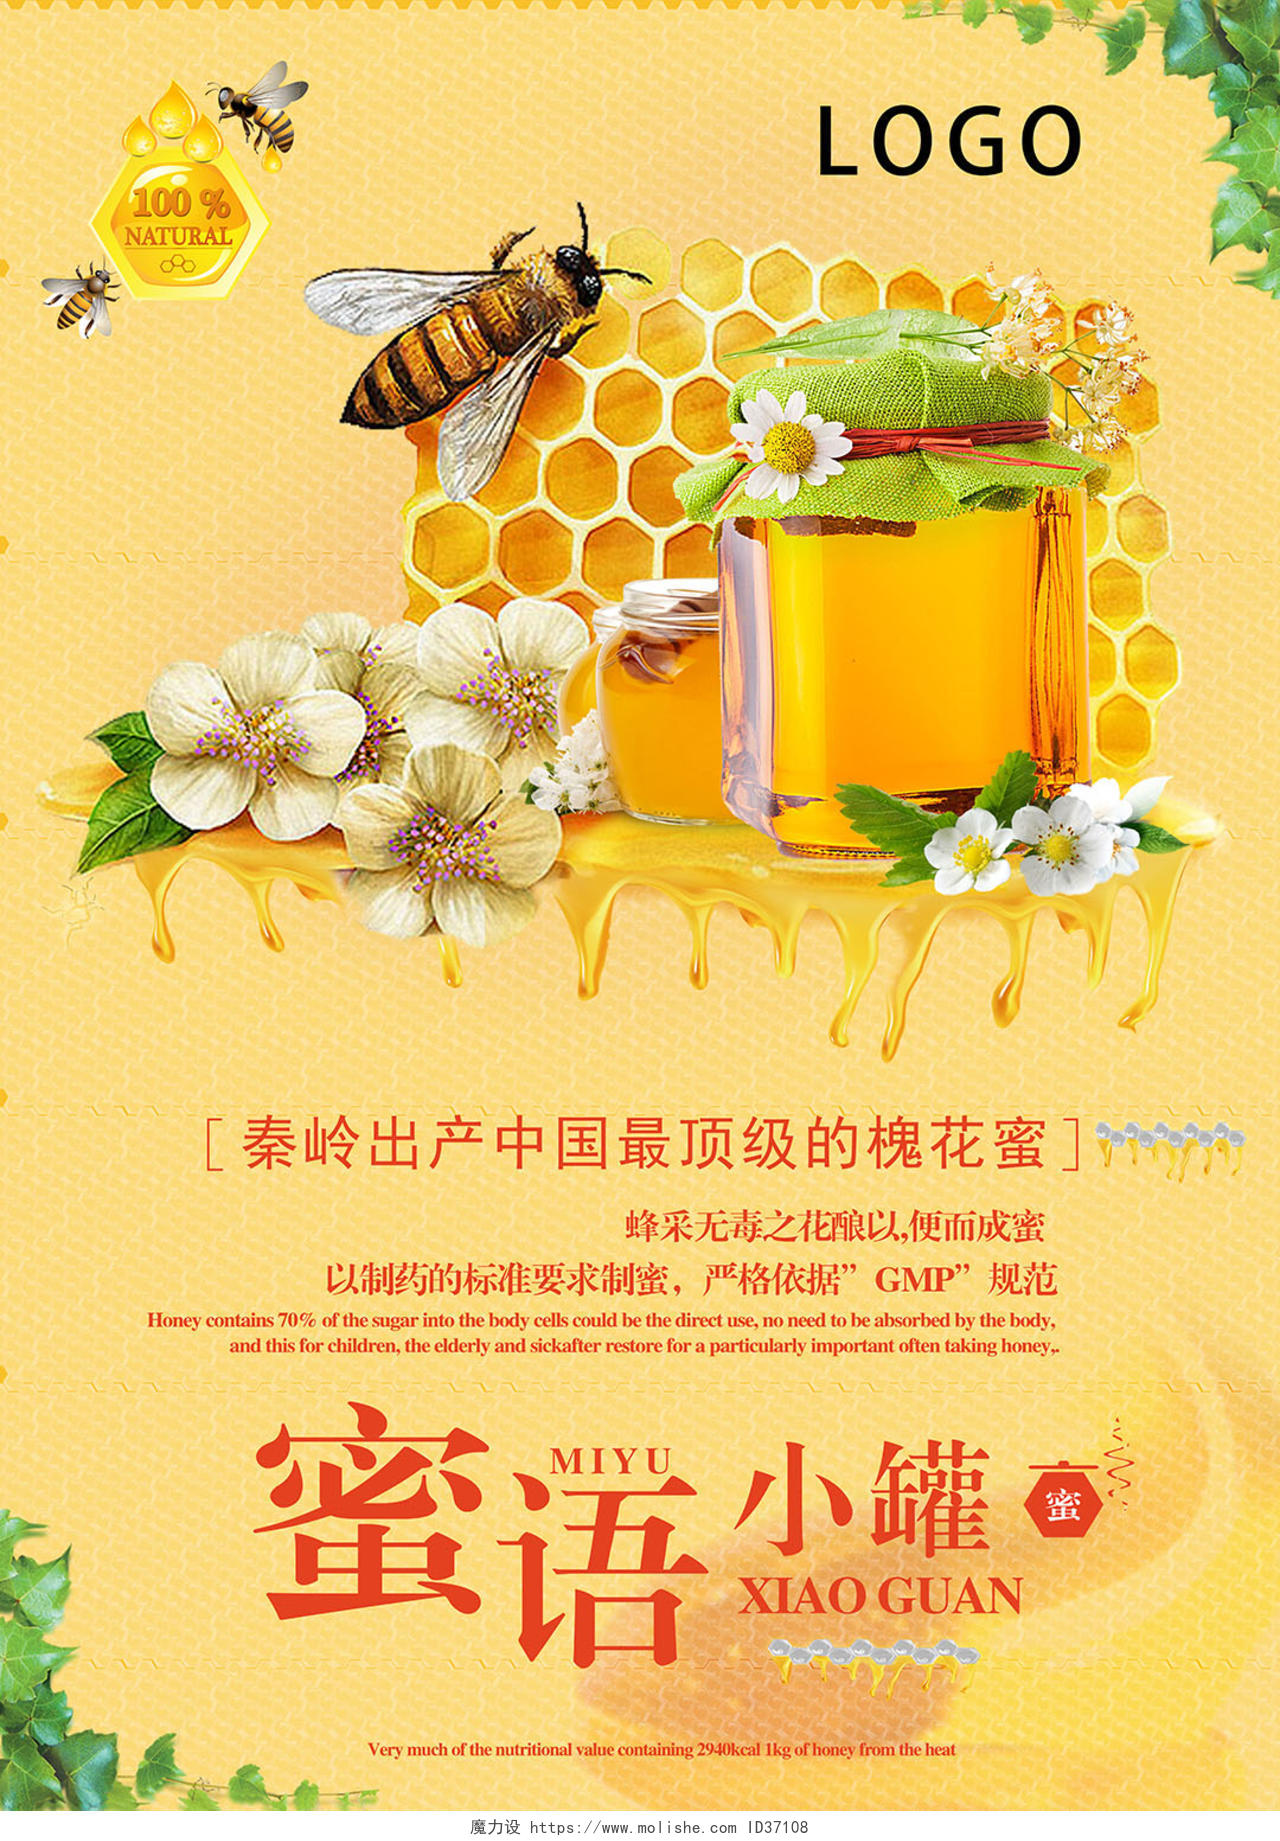 自然槐花蜂蜜产品促销广告宣传海报